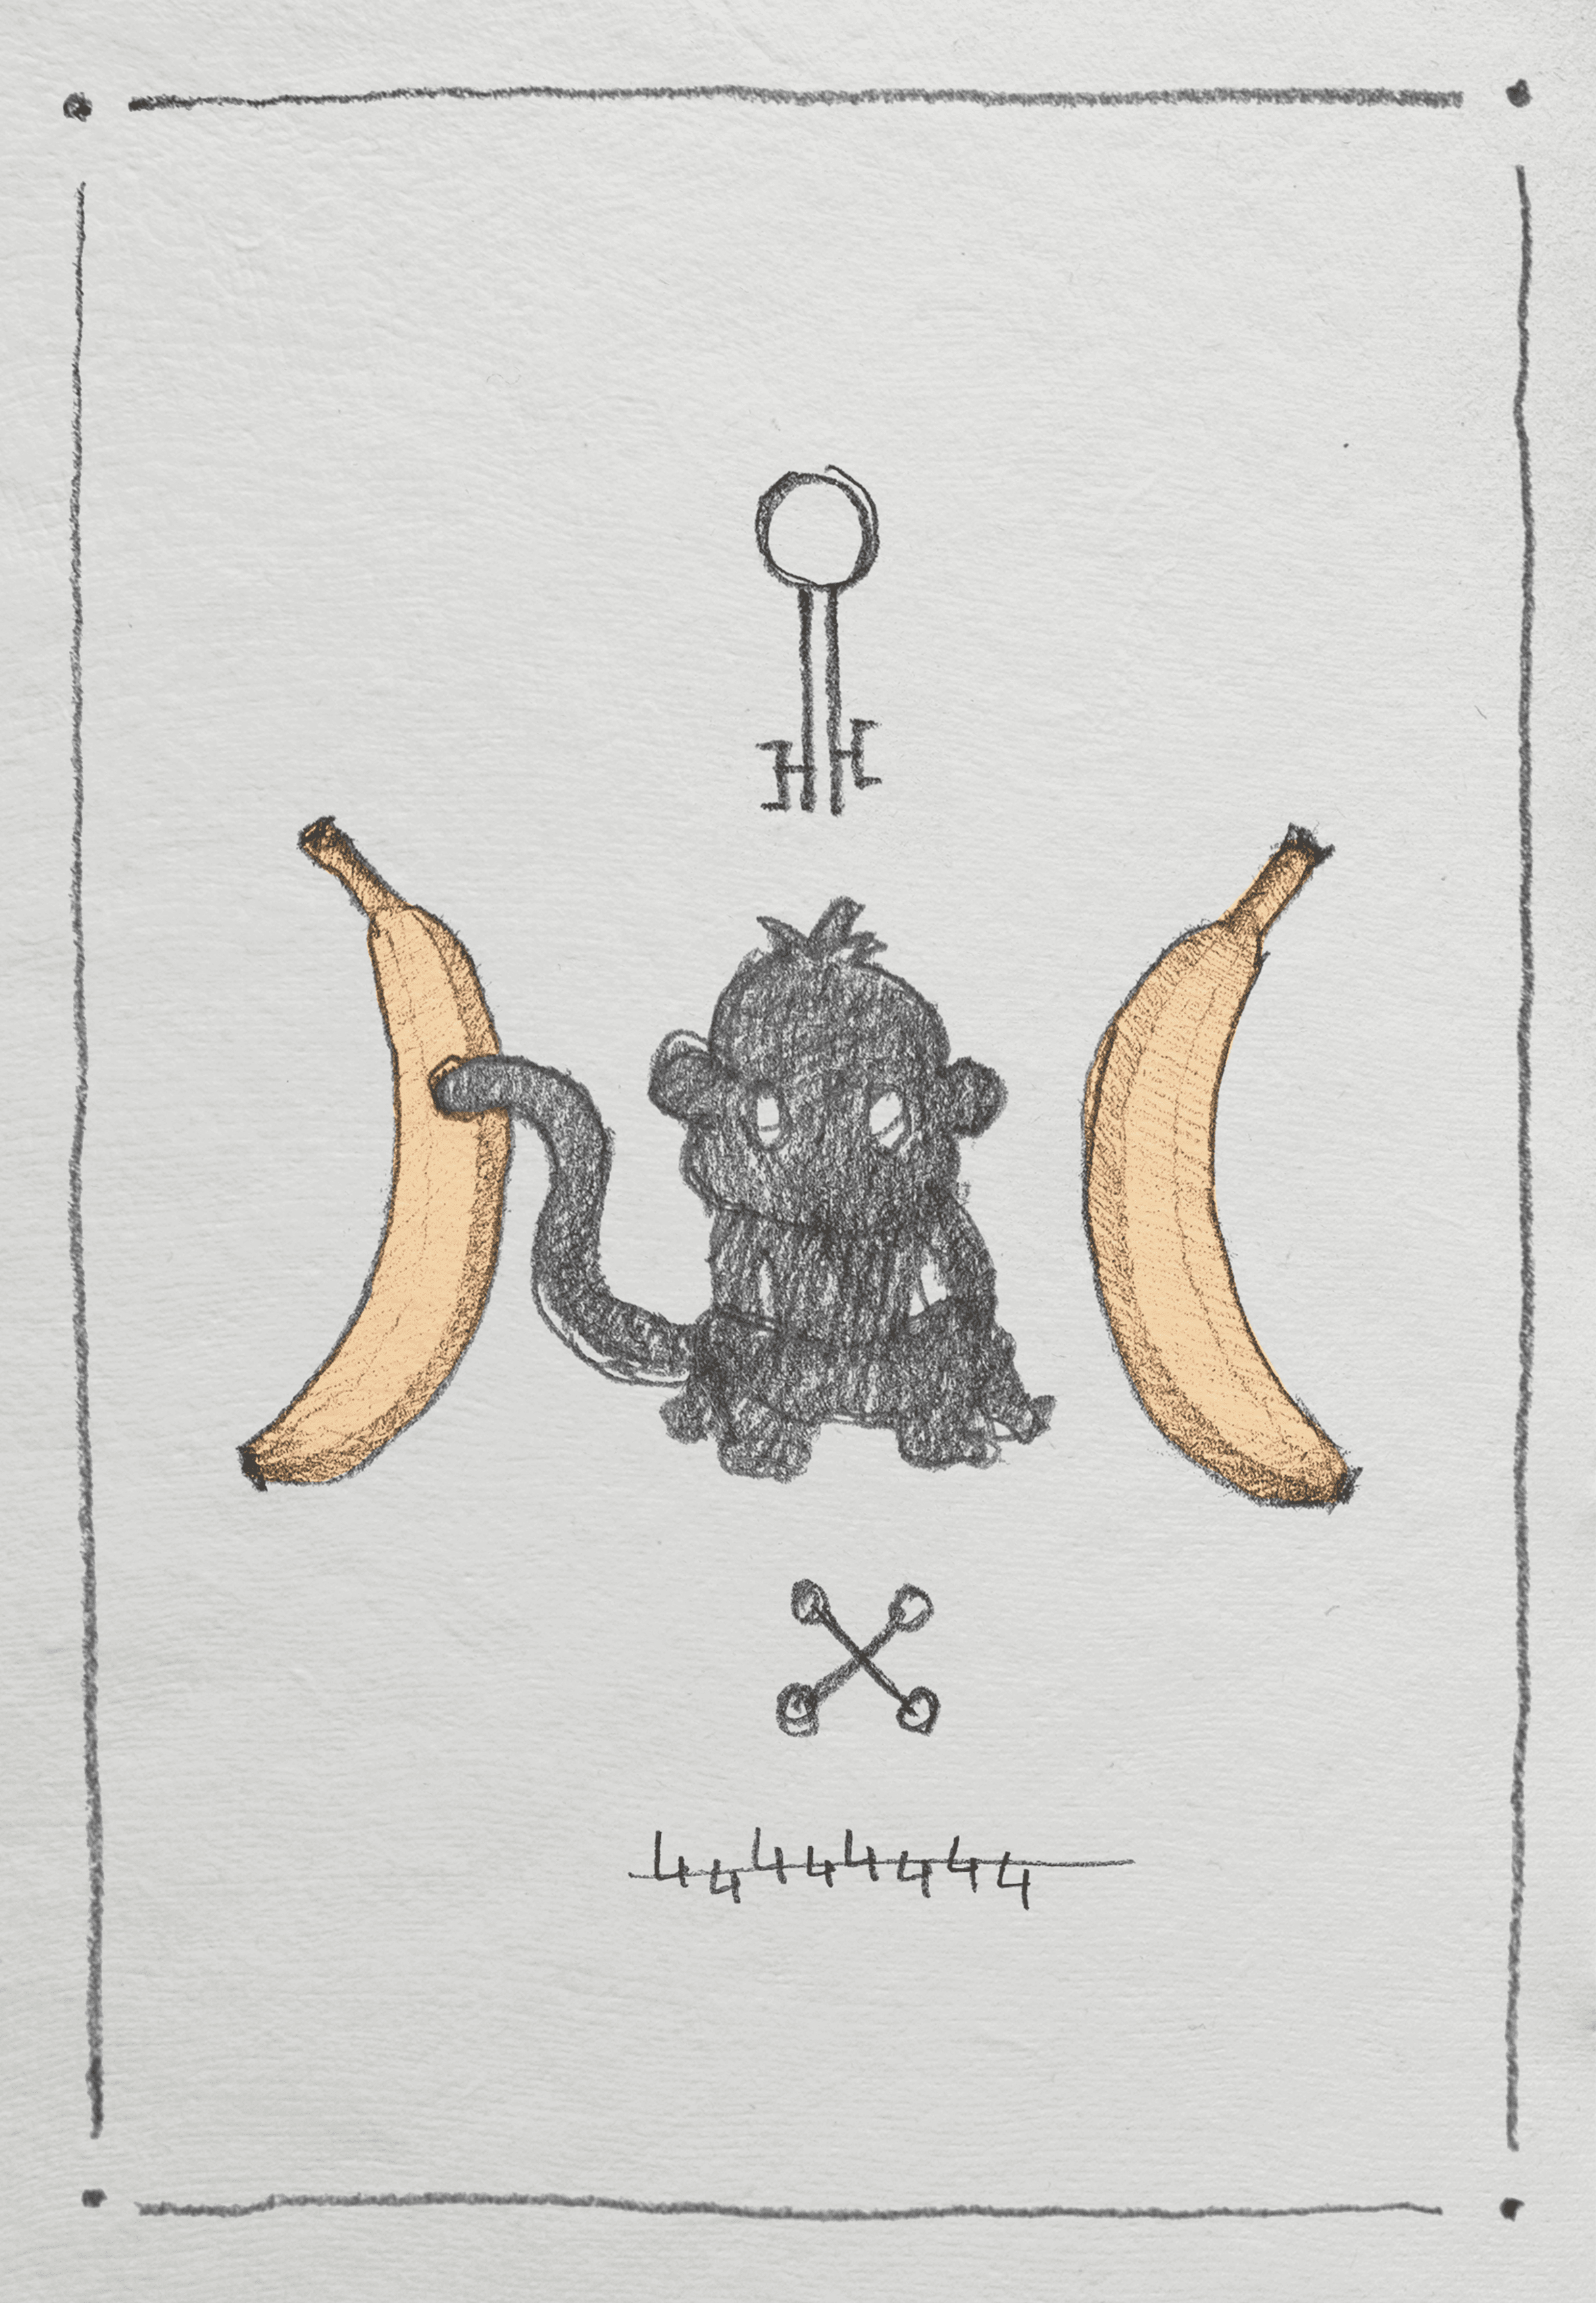 The Monkey Key